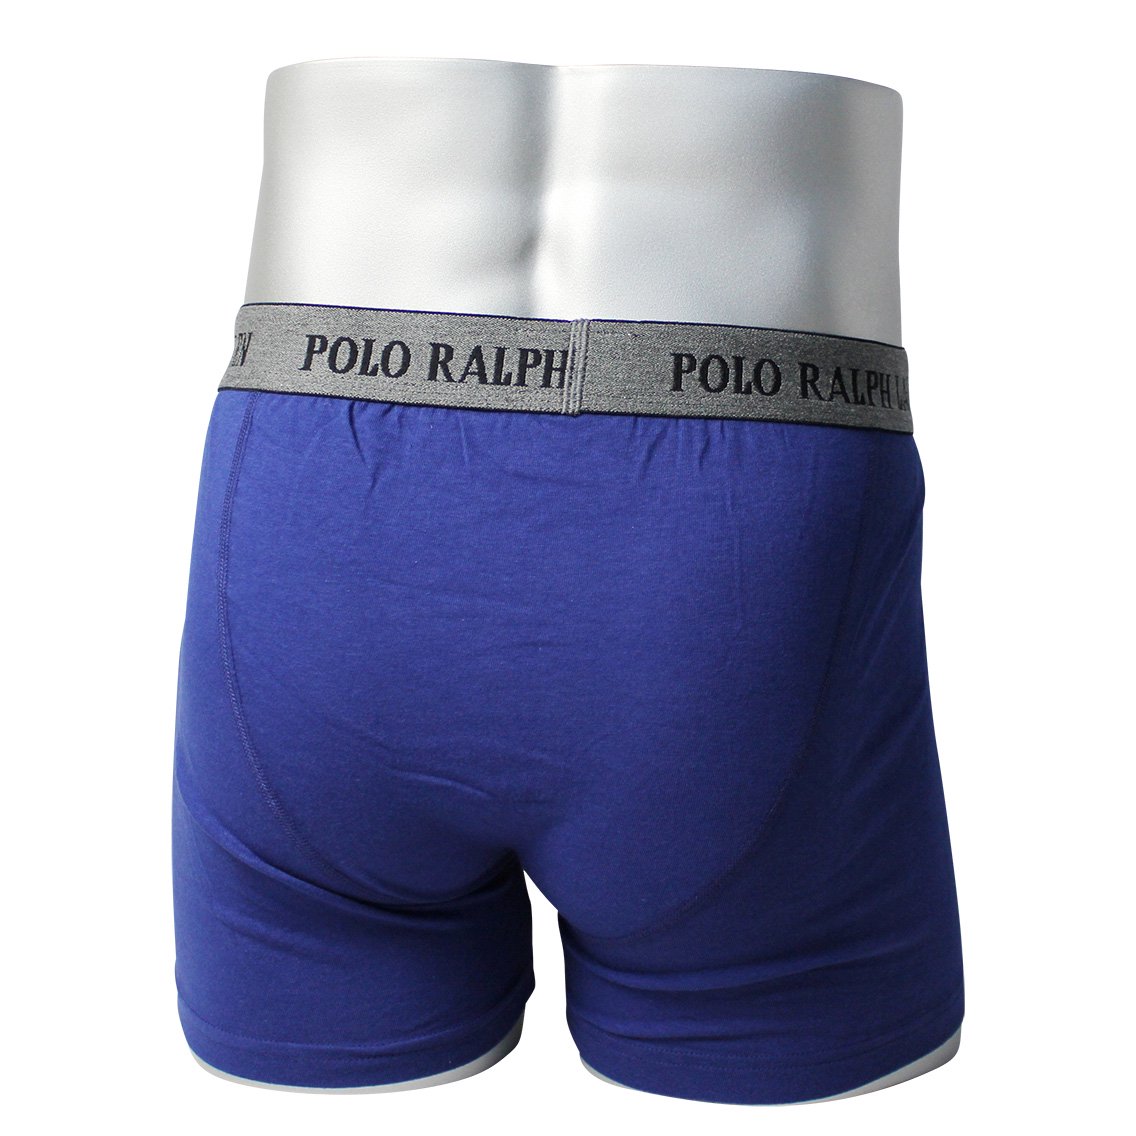 Polo Ralph Lauren(ポロラルフローレン)[P998-XV]:ボクサーパンツ,男性下着,インナーの通販